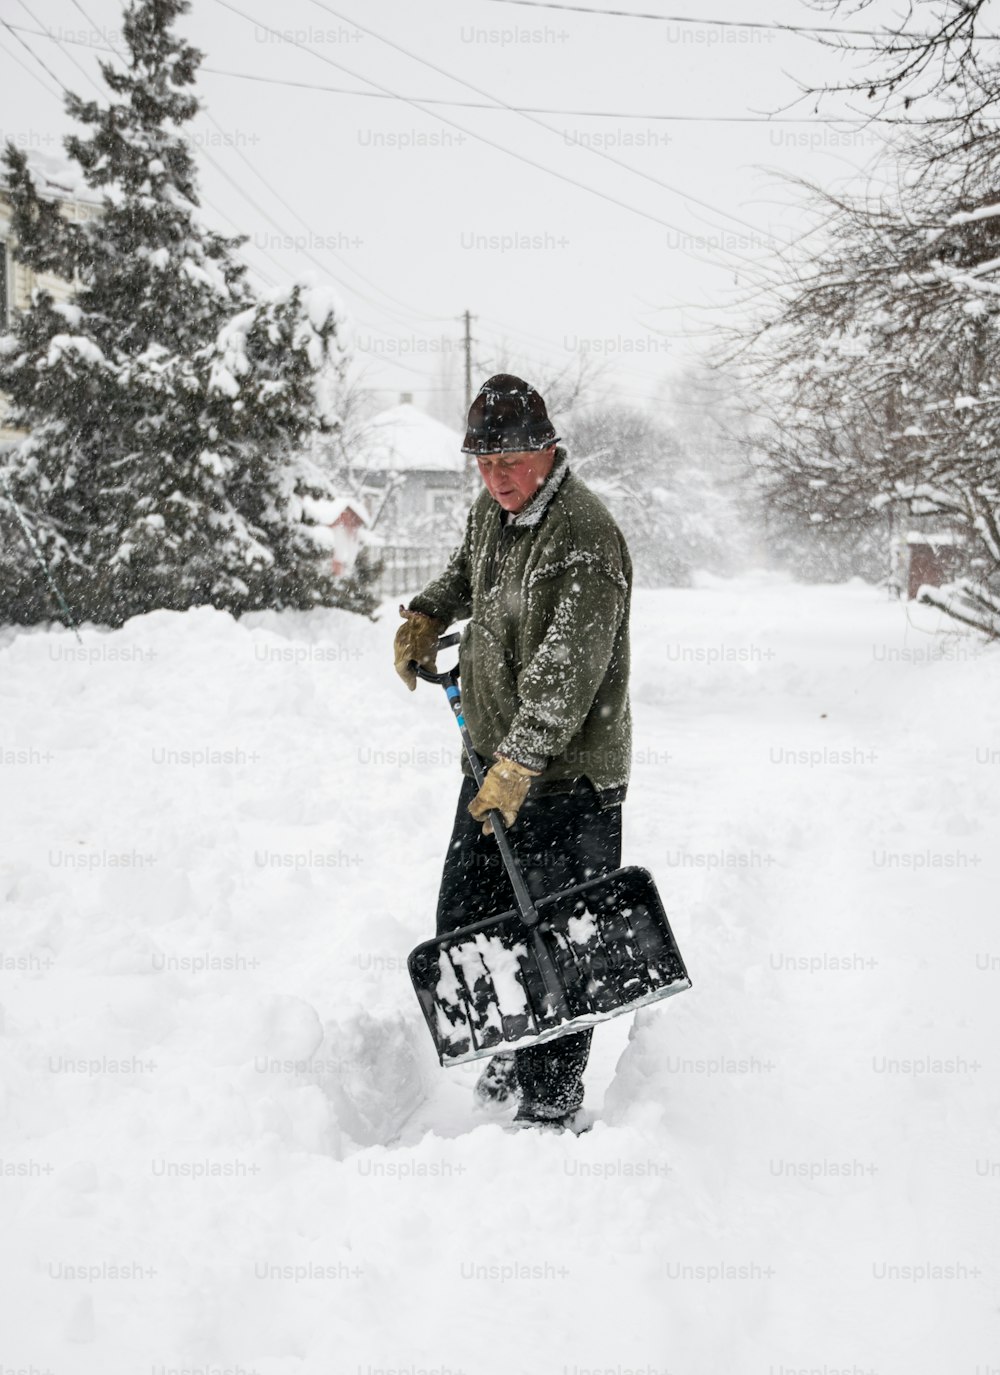 Schneeräumung im Winter. Ein Mann mit einer Schaufel räumt den Hof und die Einfahrt von Schnee bei starkem Schneefall